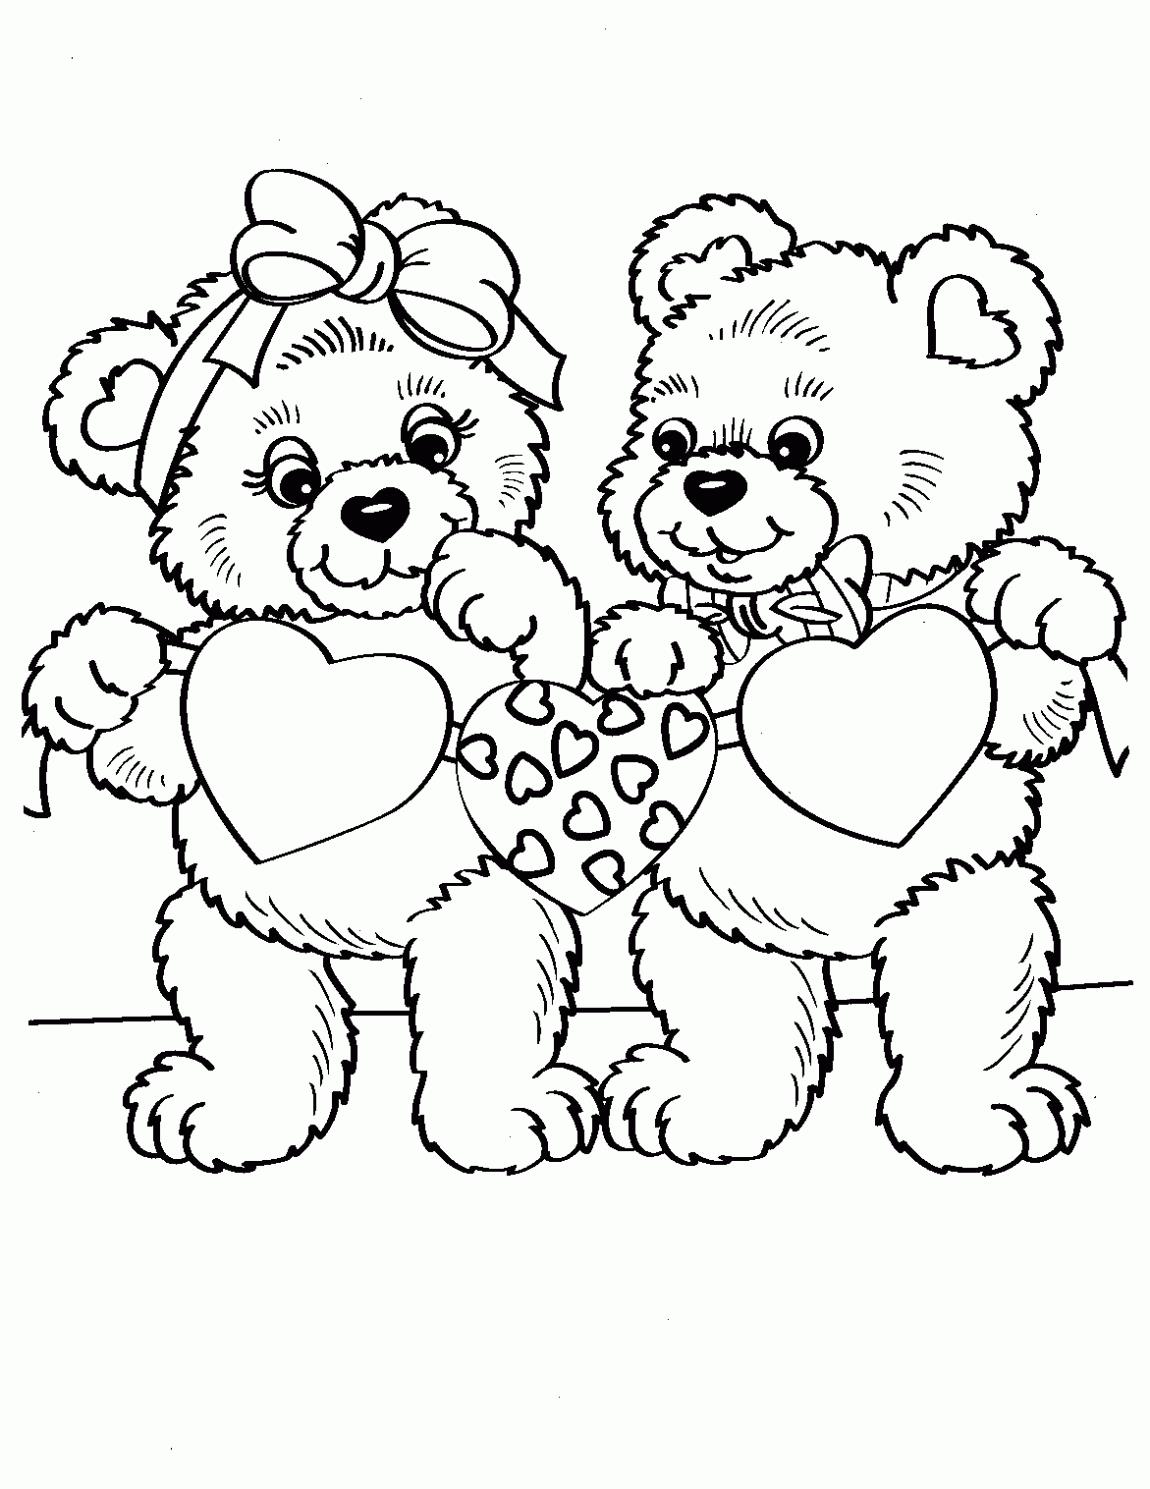 Медвежата с сердечками на раскрасках для мальчиков (медвежата)